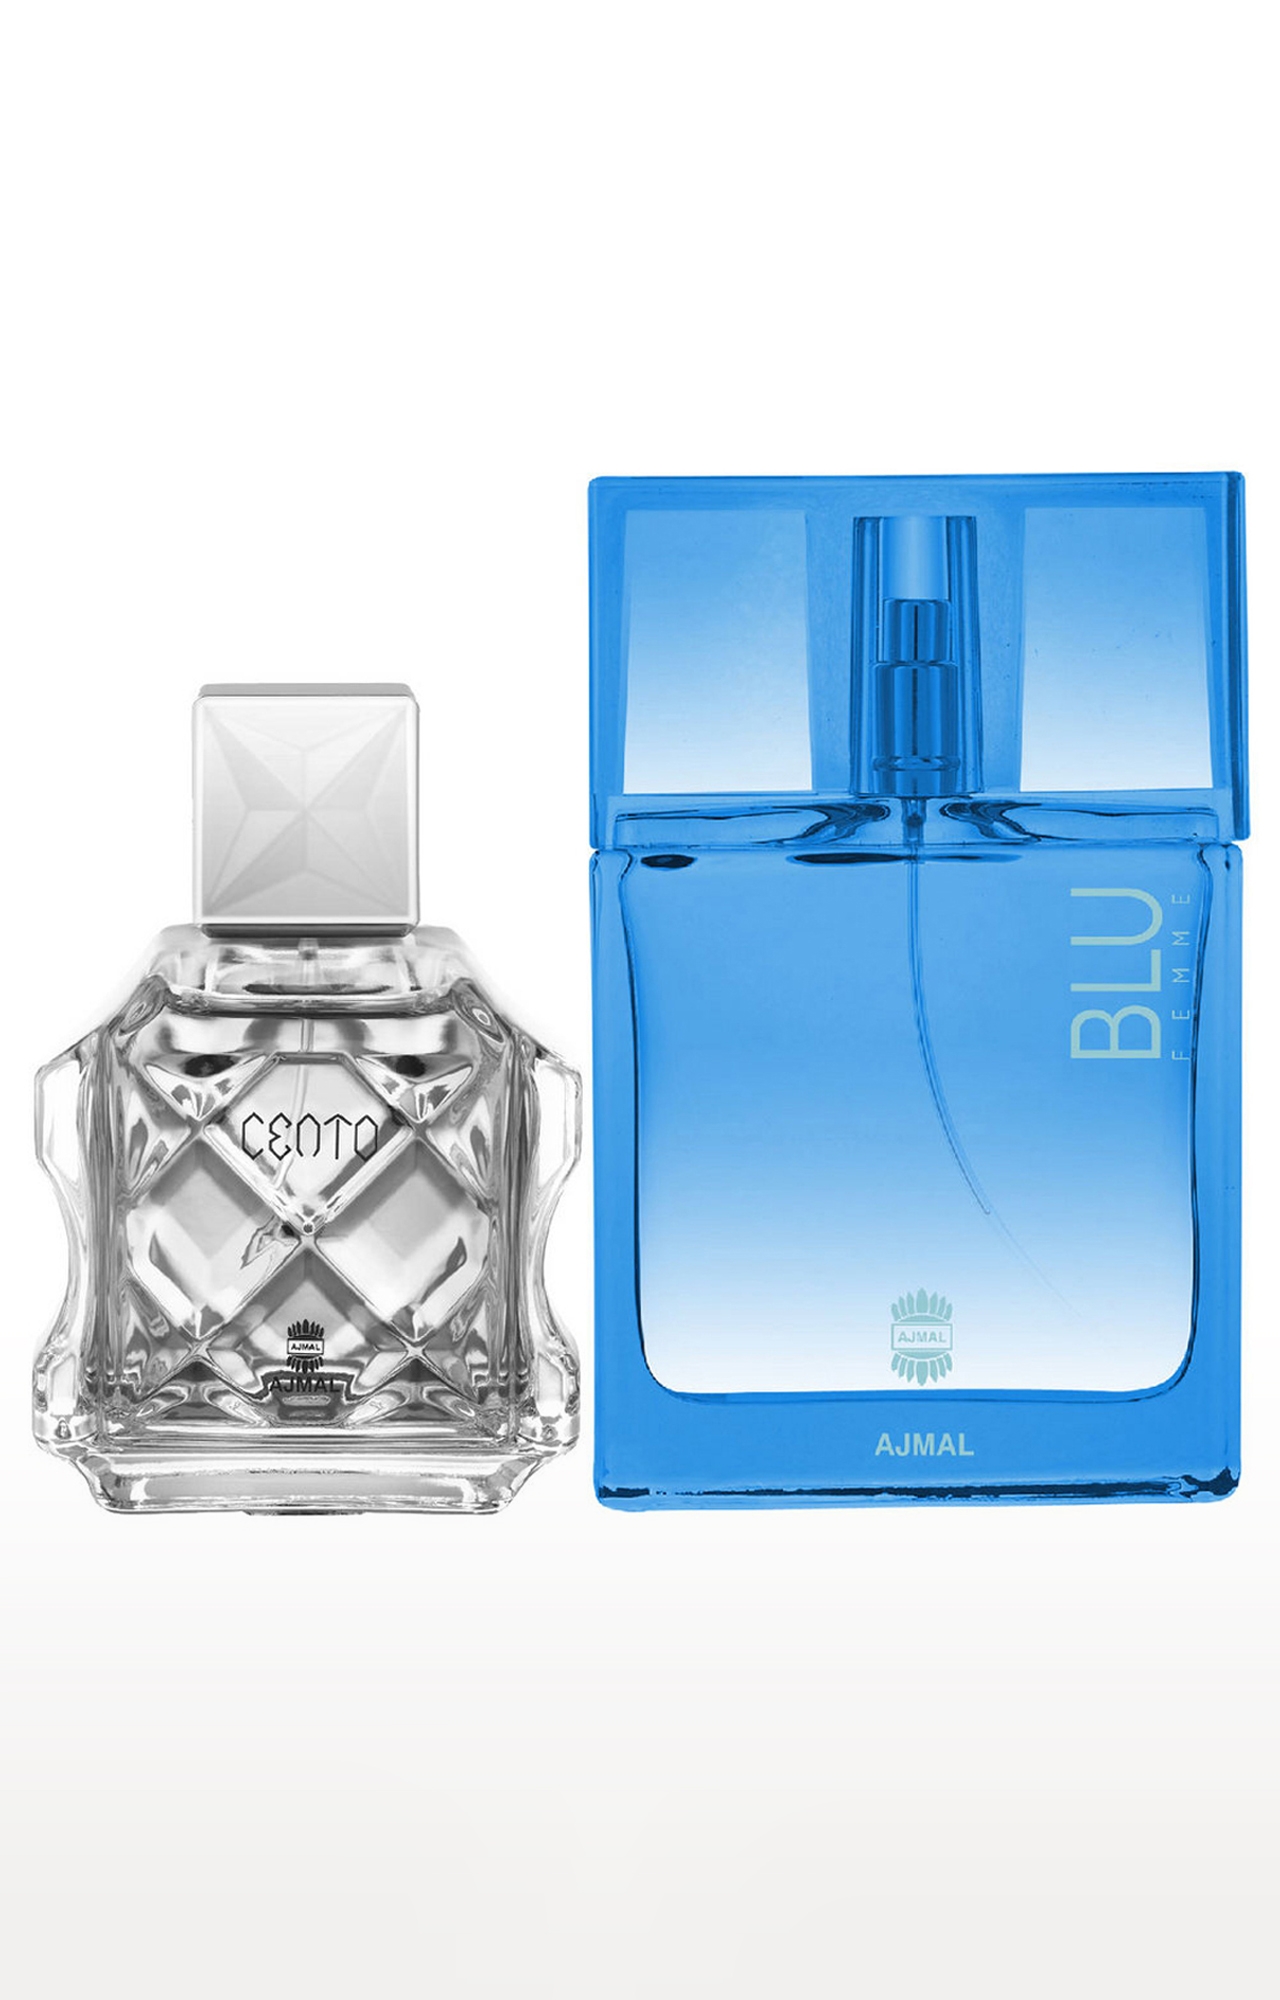 Ajmal Cento EDP Perfume 100ml for Men and Blu Femme EDP Perfume 50ml for Women